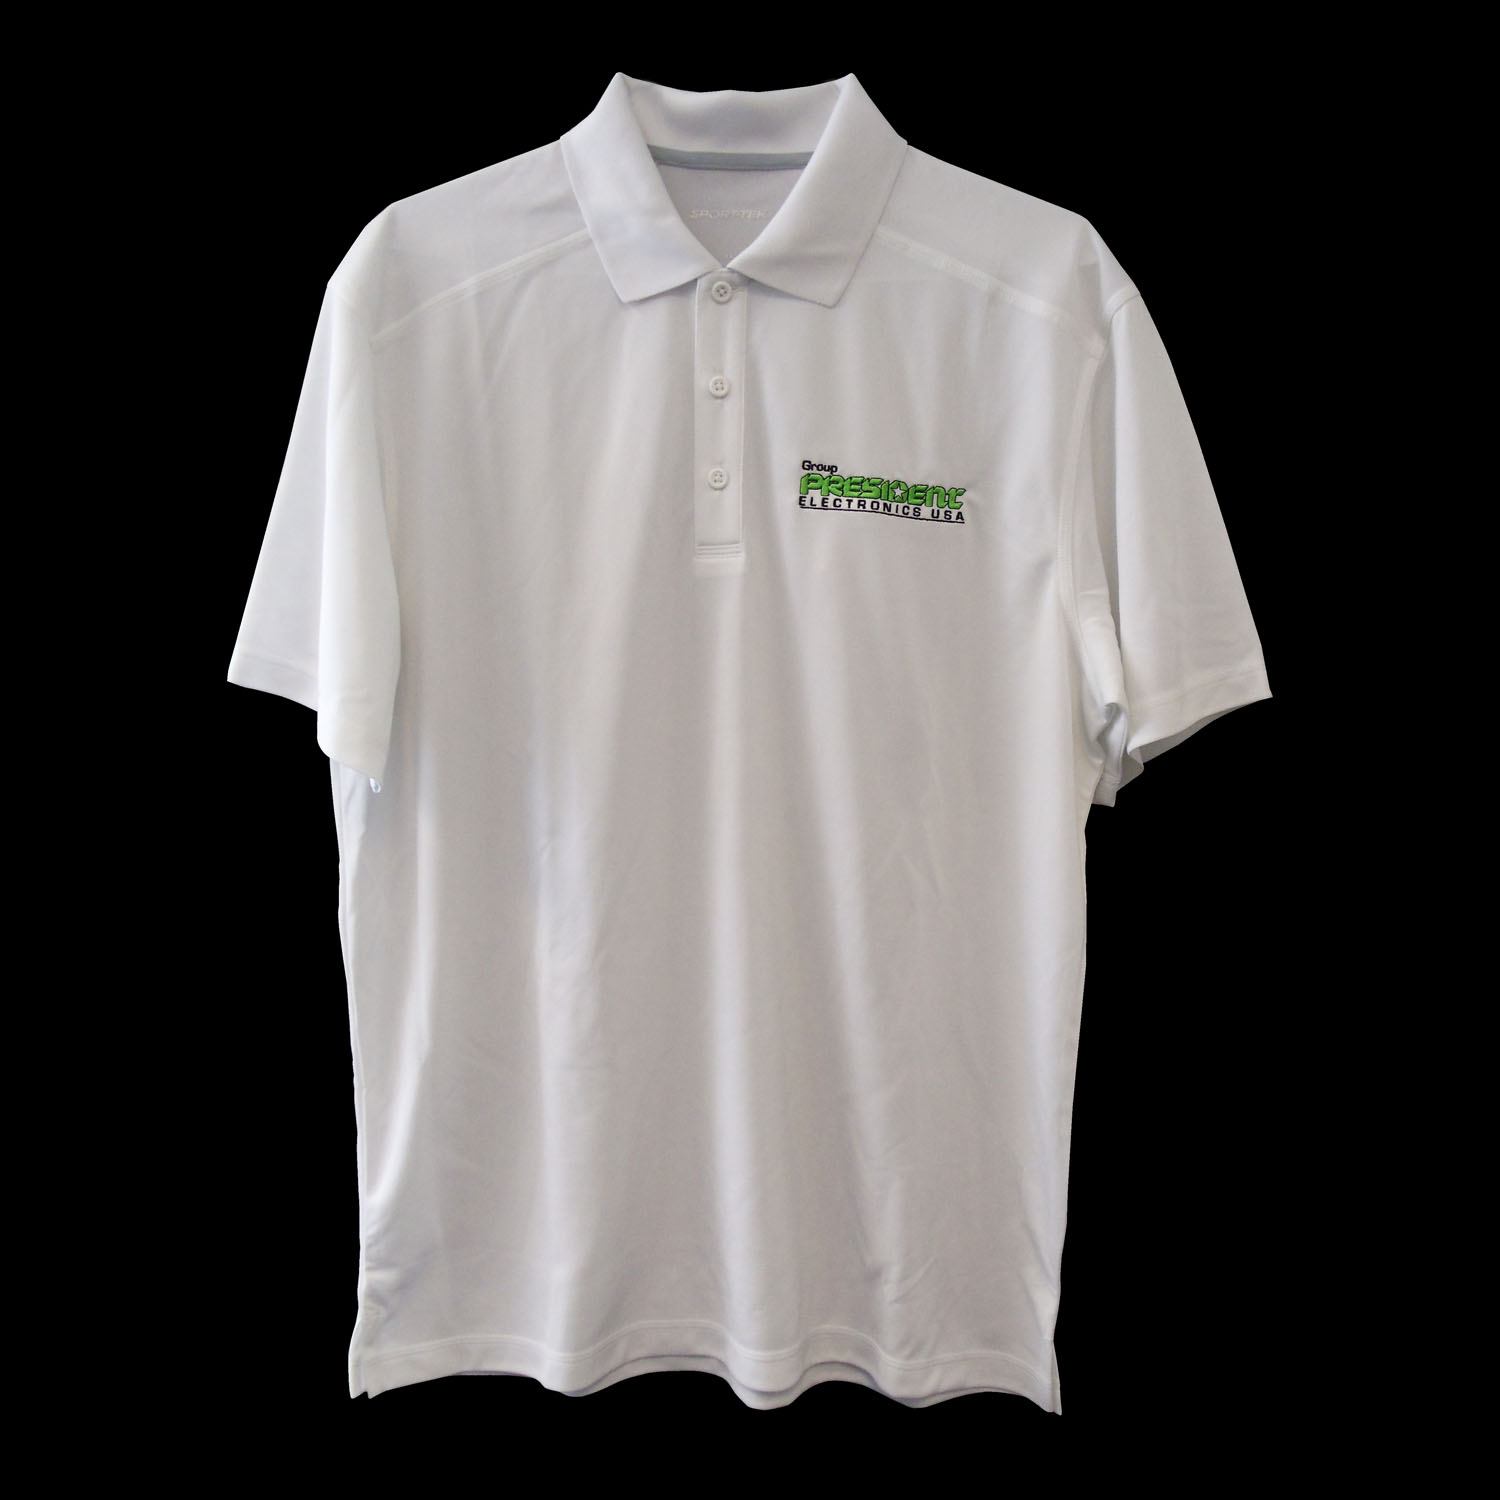 President Electronics Logo White Polo Shirt - Size Large